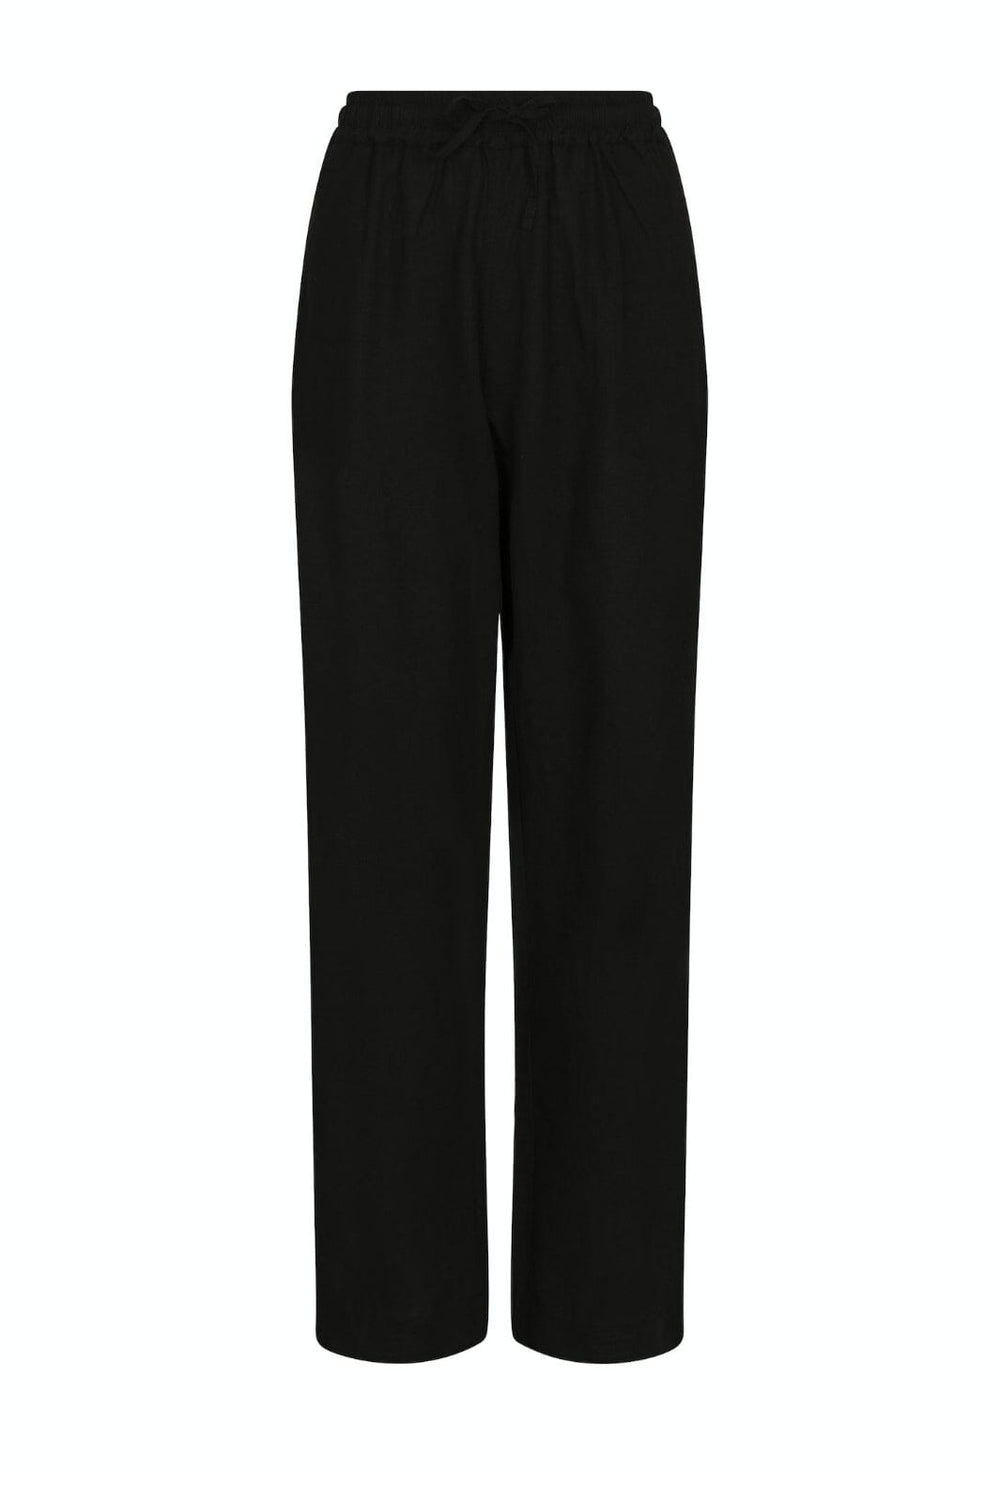 Neo Noir - Sonar Linen Pants - Black Bukser 